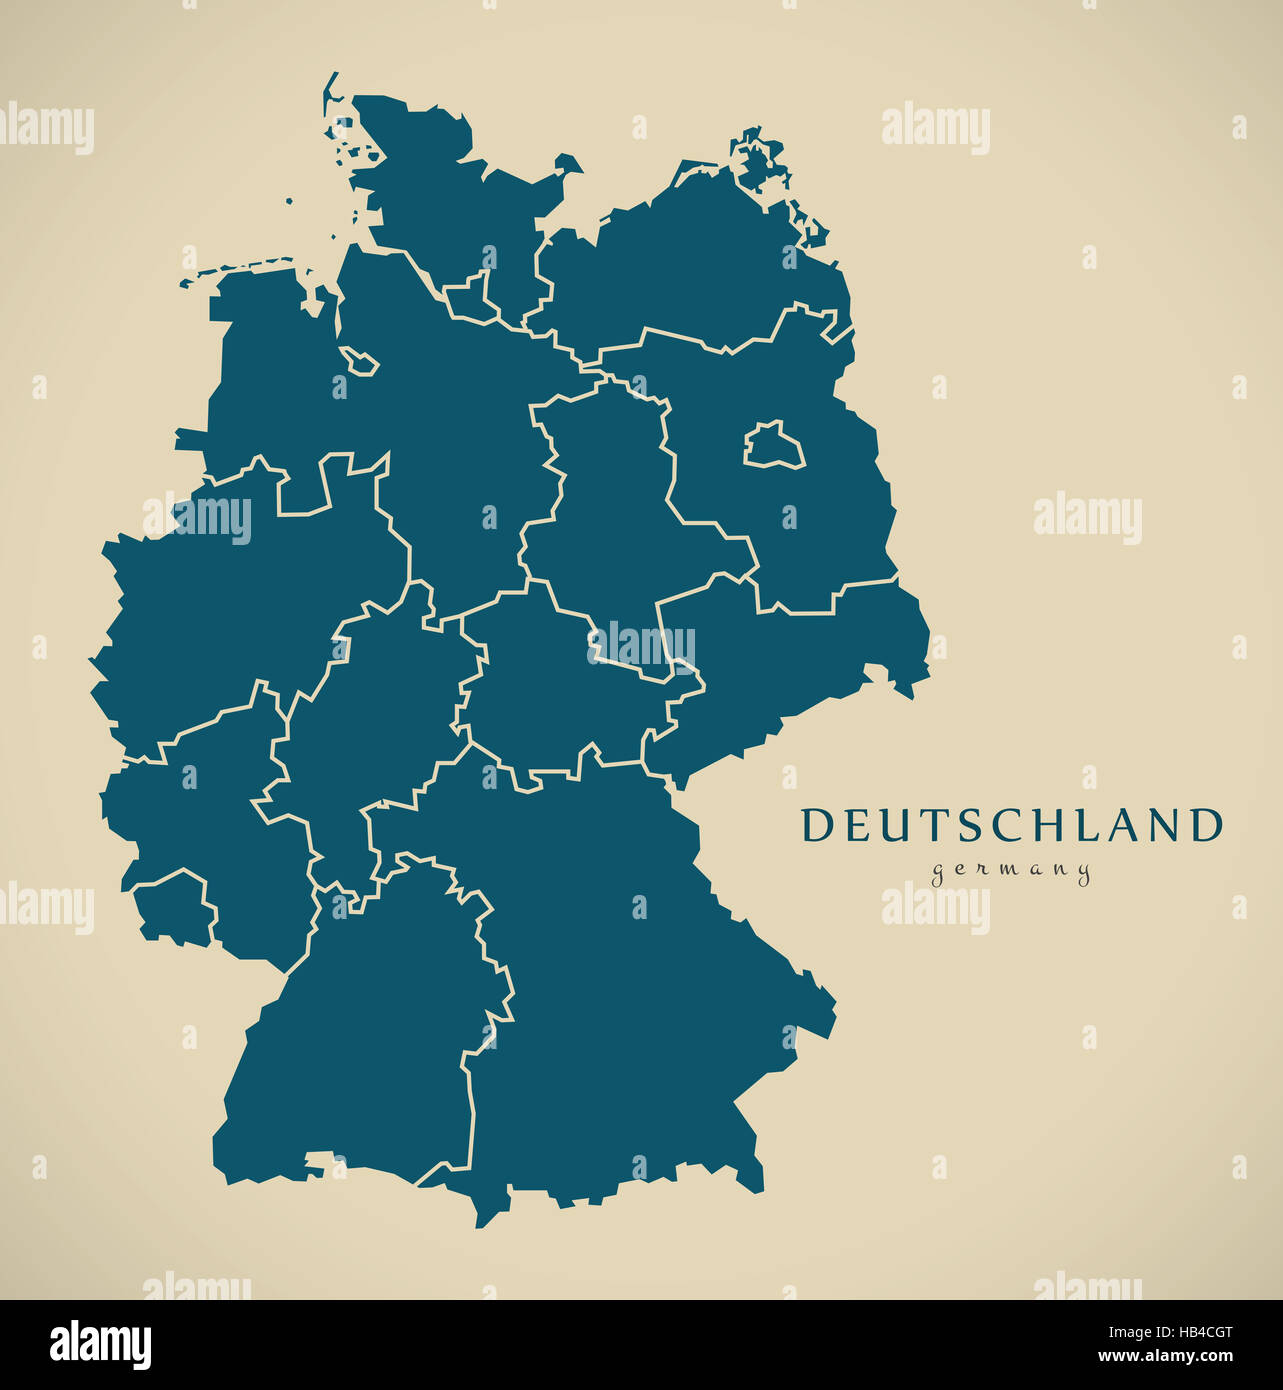 Mapa moderno - Alemania con los estados federales de la ilustración Foto de stock